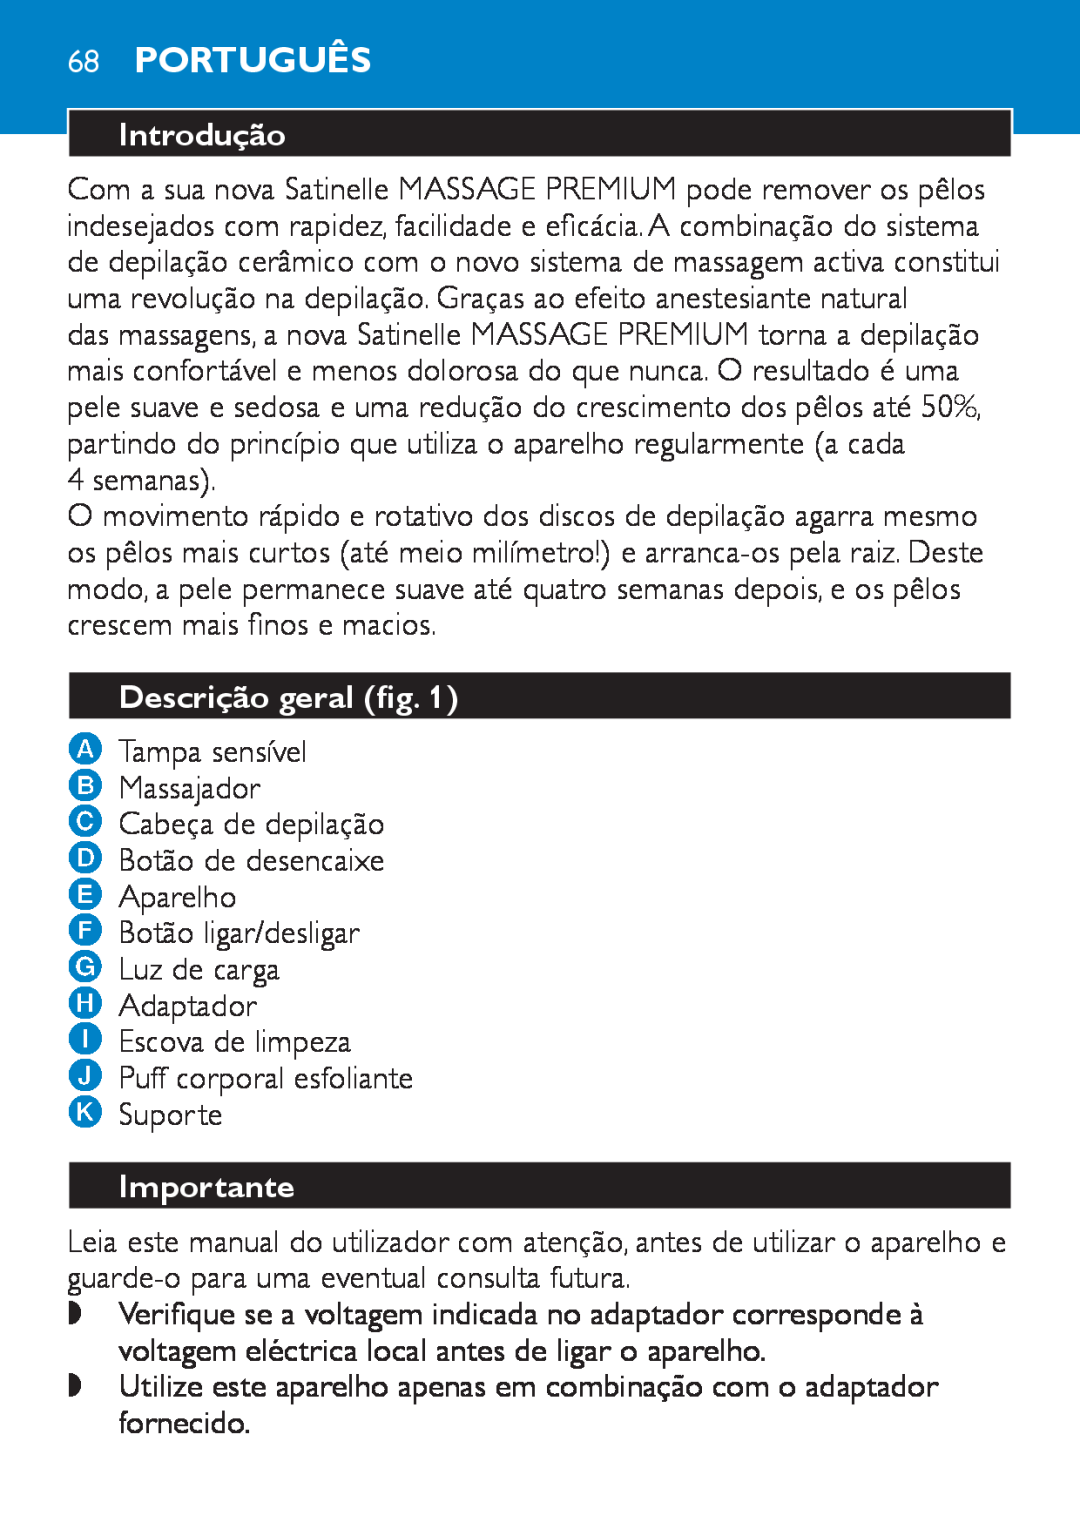 Philips HP6490 manual 68Português, Introdução, Descrição geral fig, Importante 